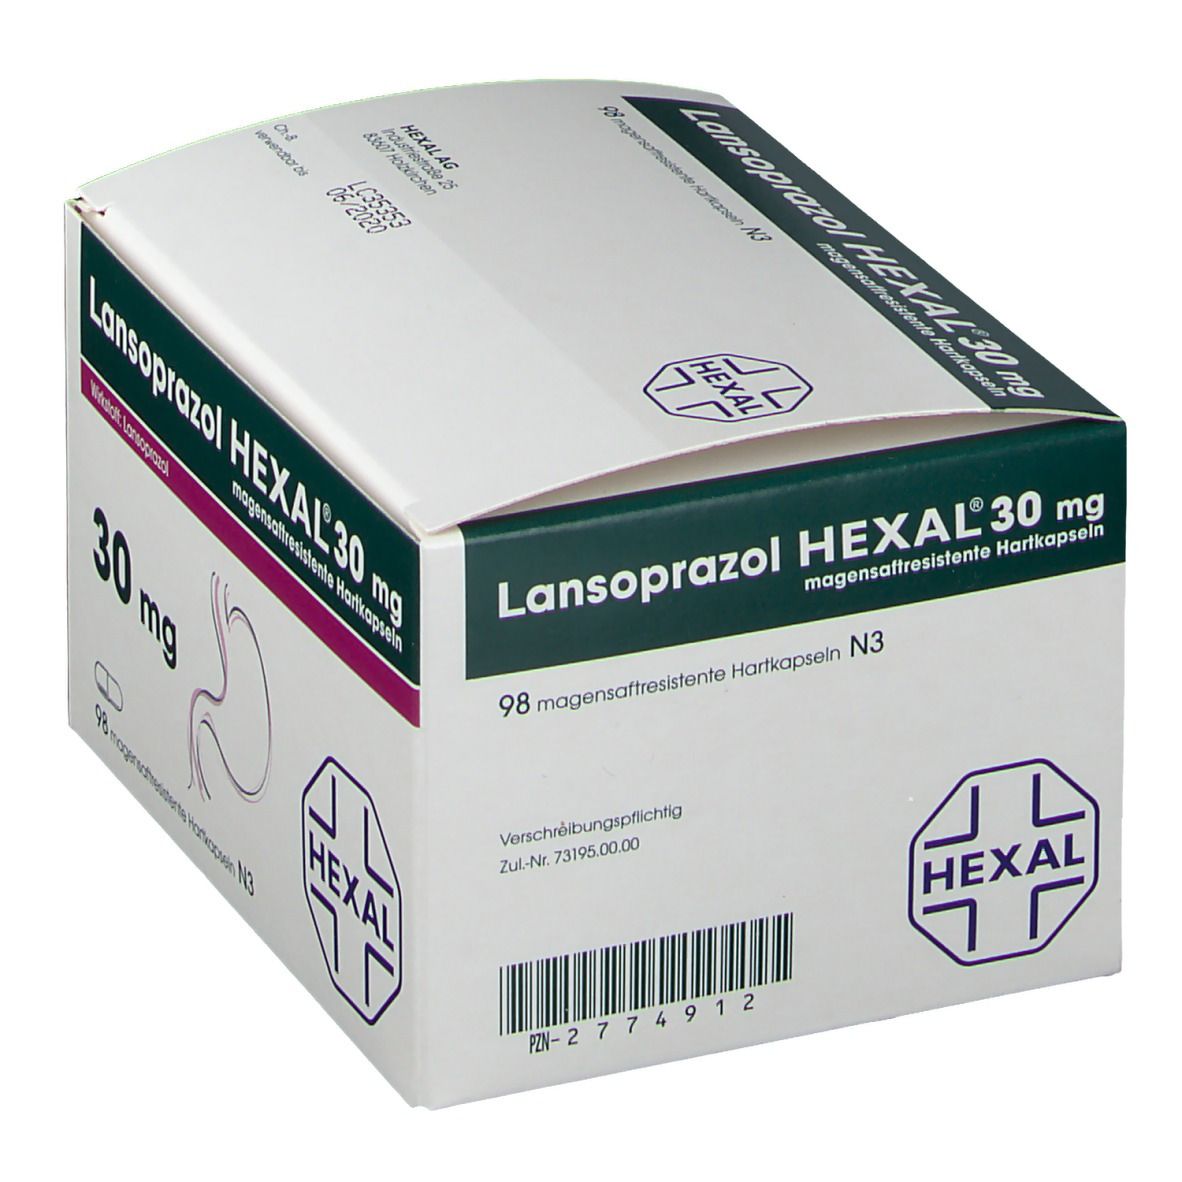 Lansoprazol Hexal 30 mg Kapseln